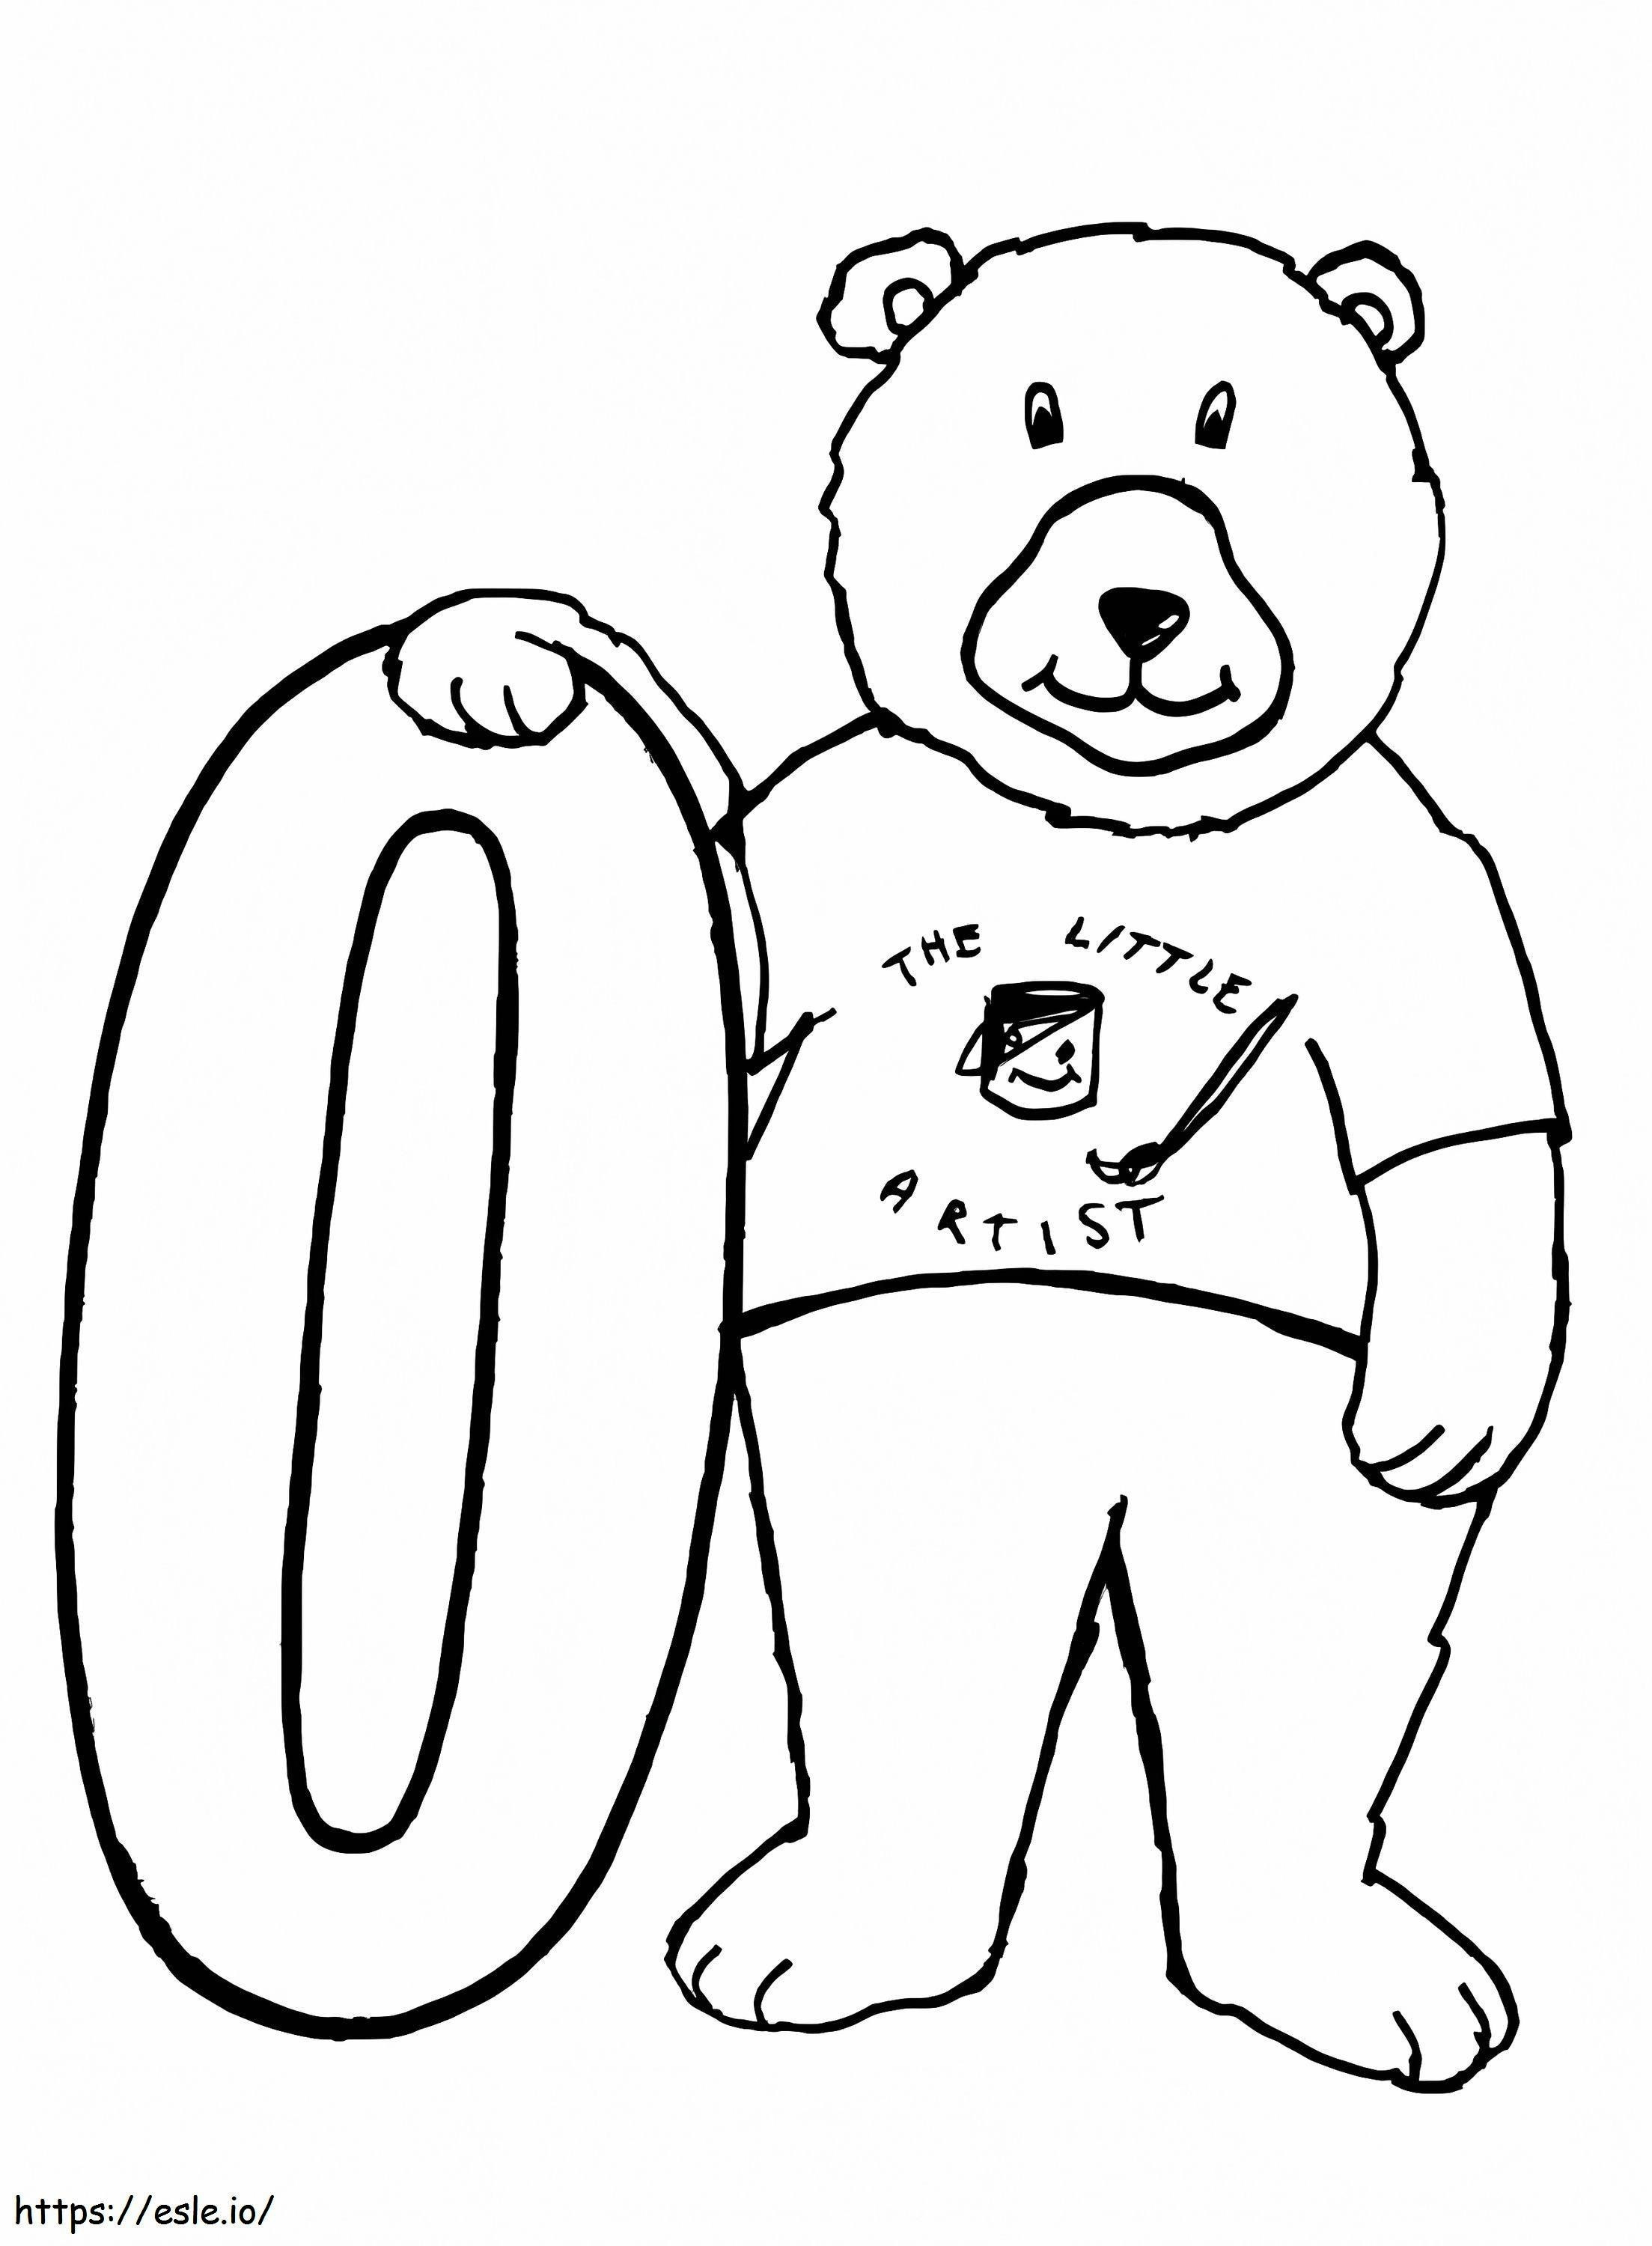 Ursul și numărul 0 de colorat